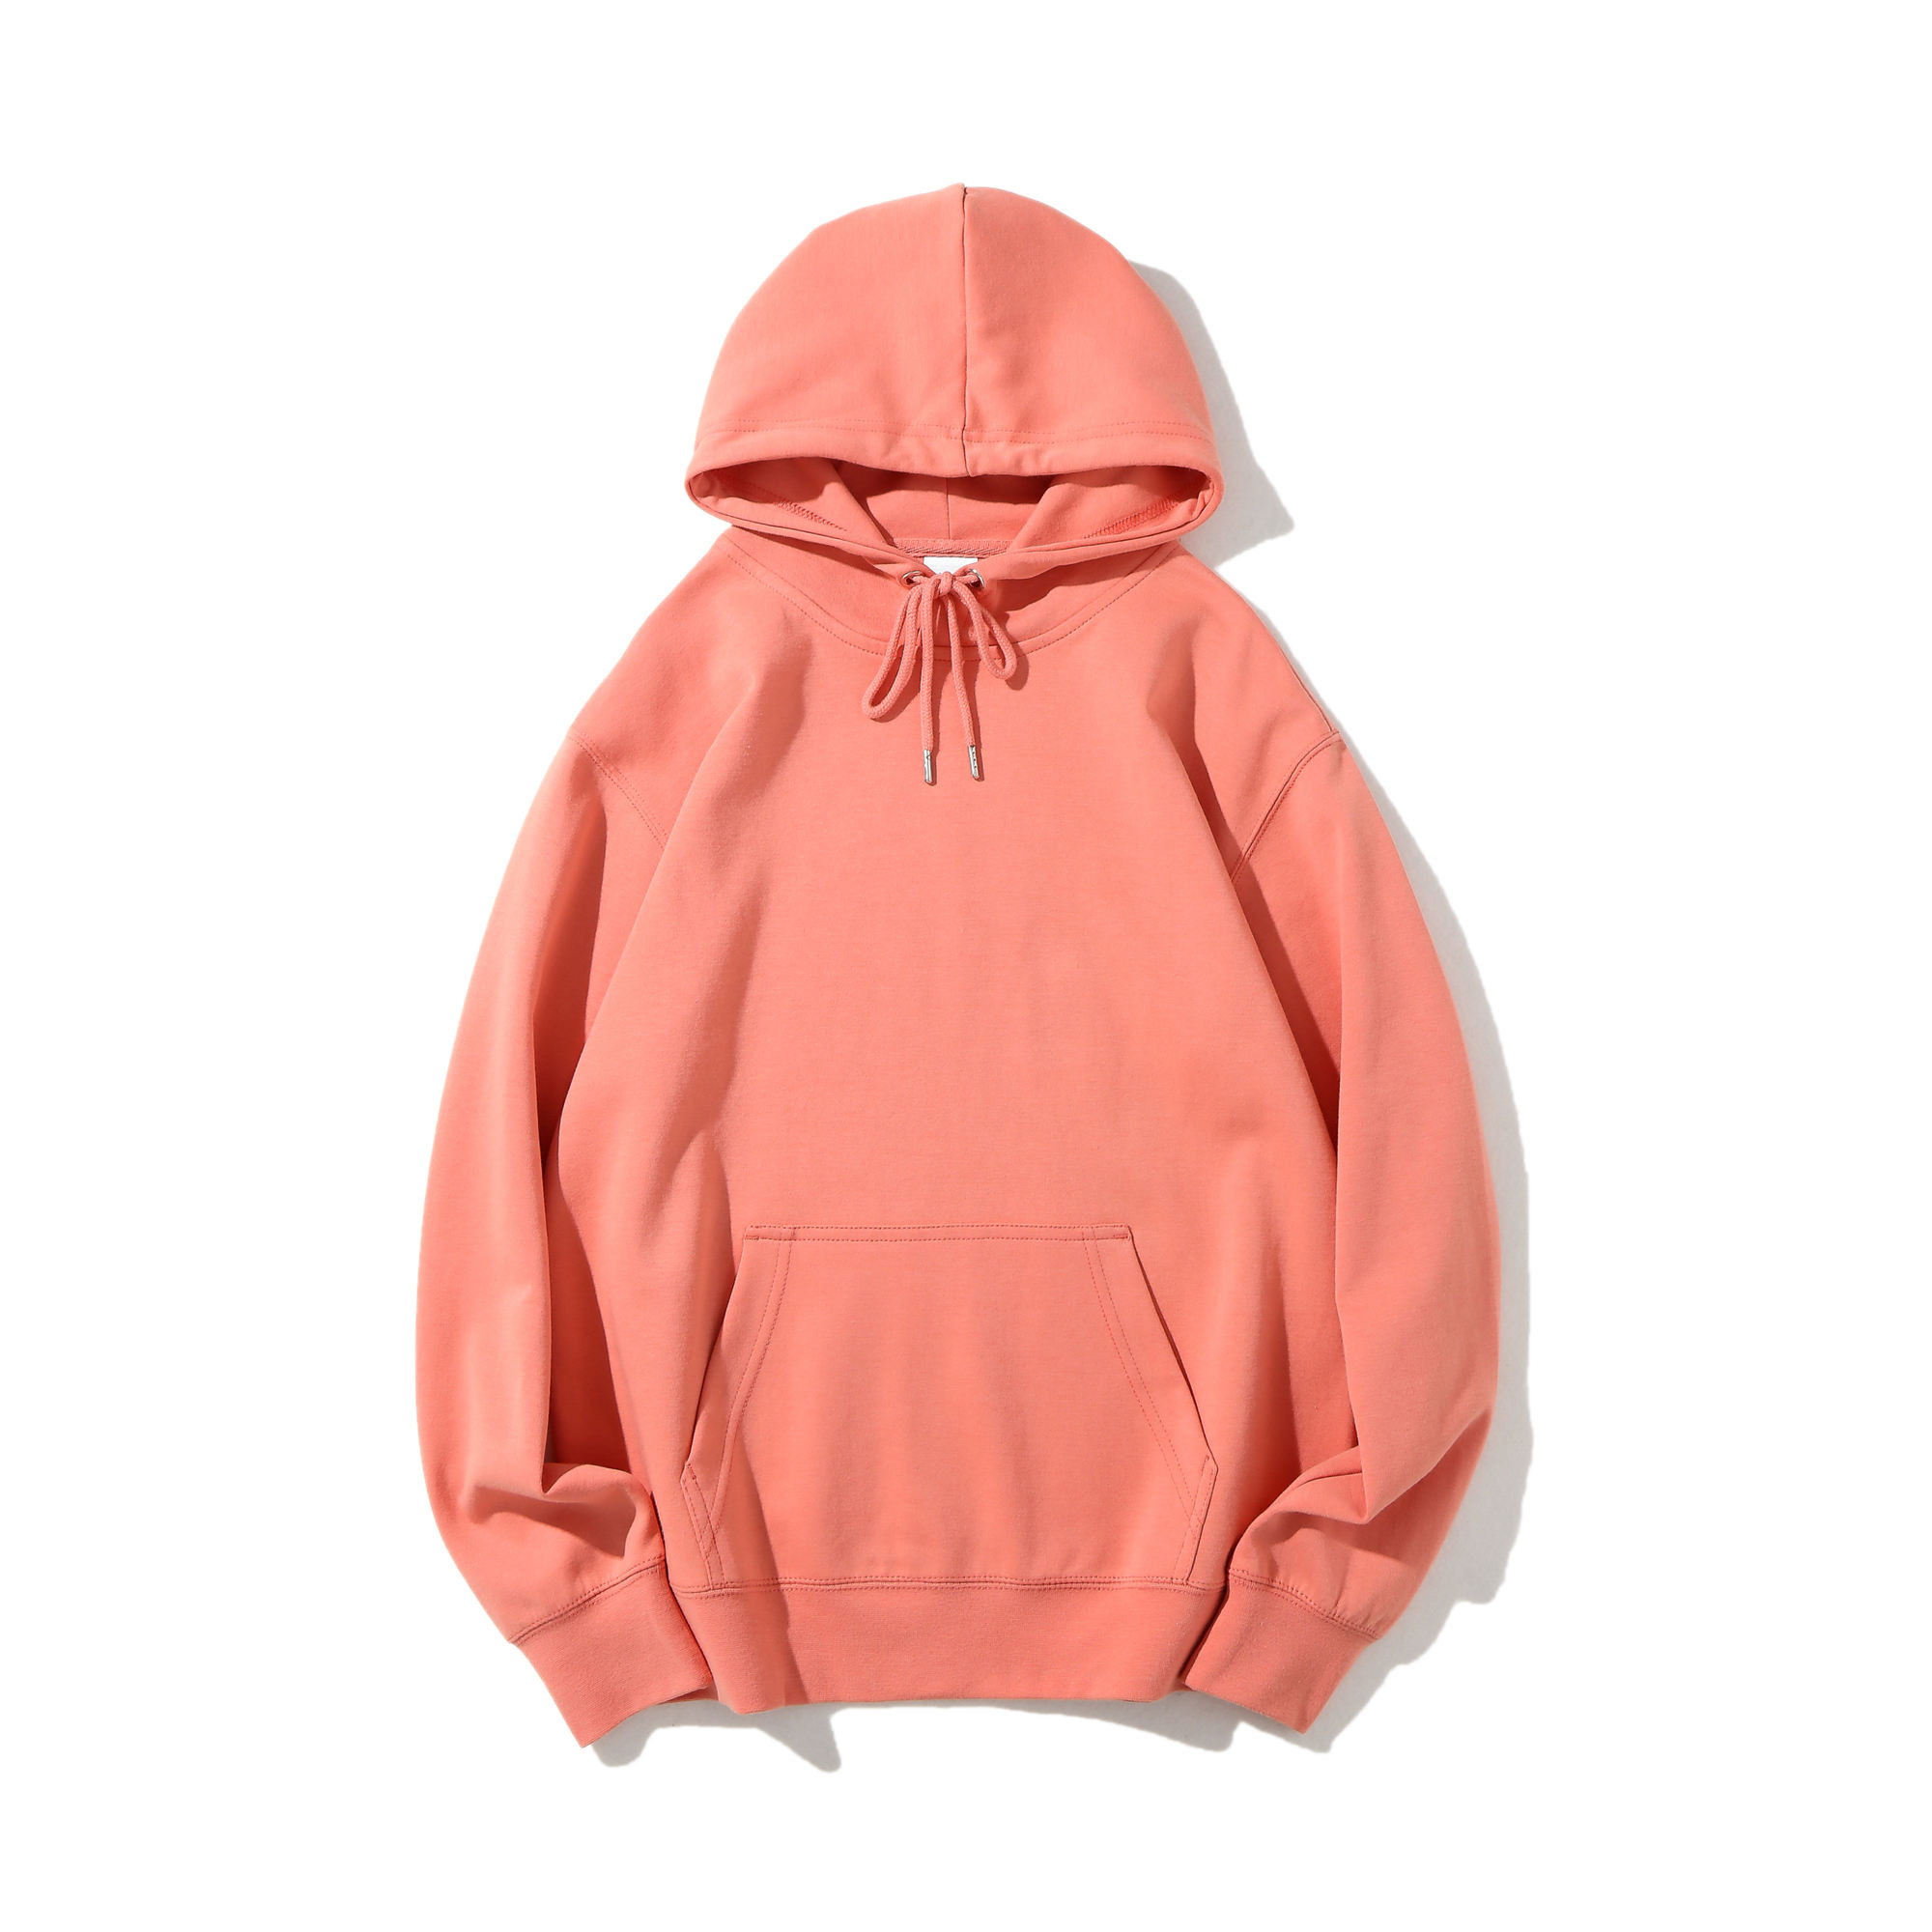 300Gsm blanco hoogwaardige hoodies groothandel meerkleurige hoodie aangepaste hoodie unisex